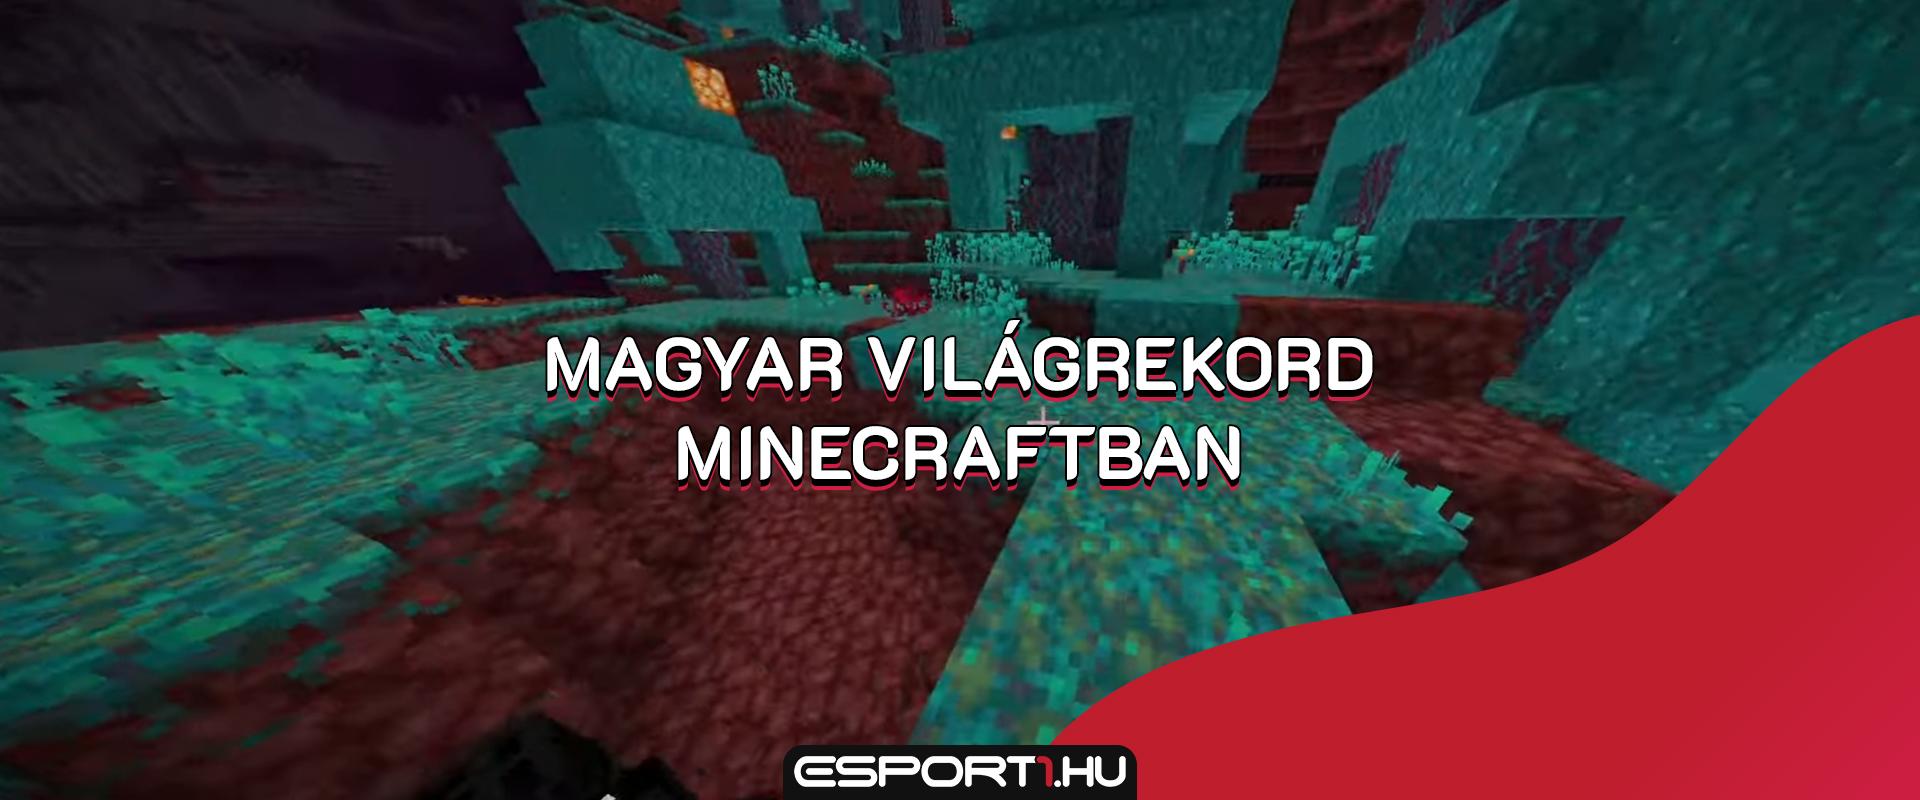 Gaming:  Egy magyar srác megdöntötte a Minecraft speedrun világrekordot